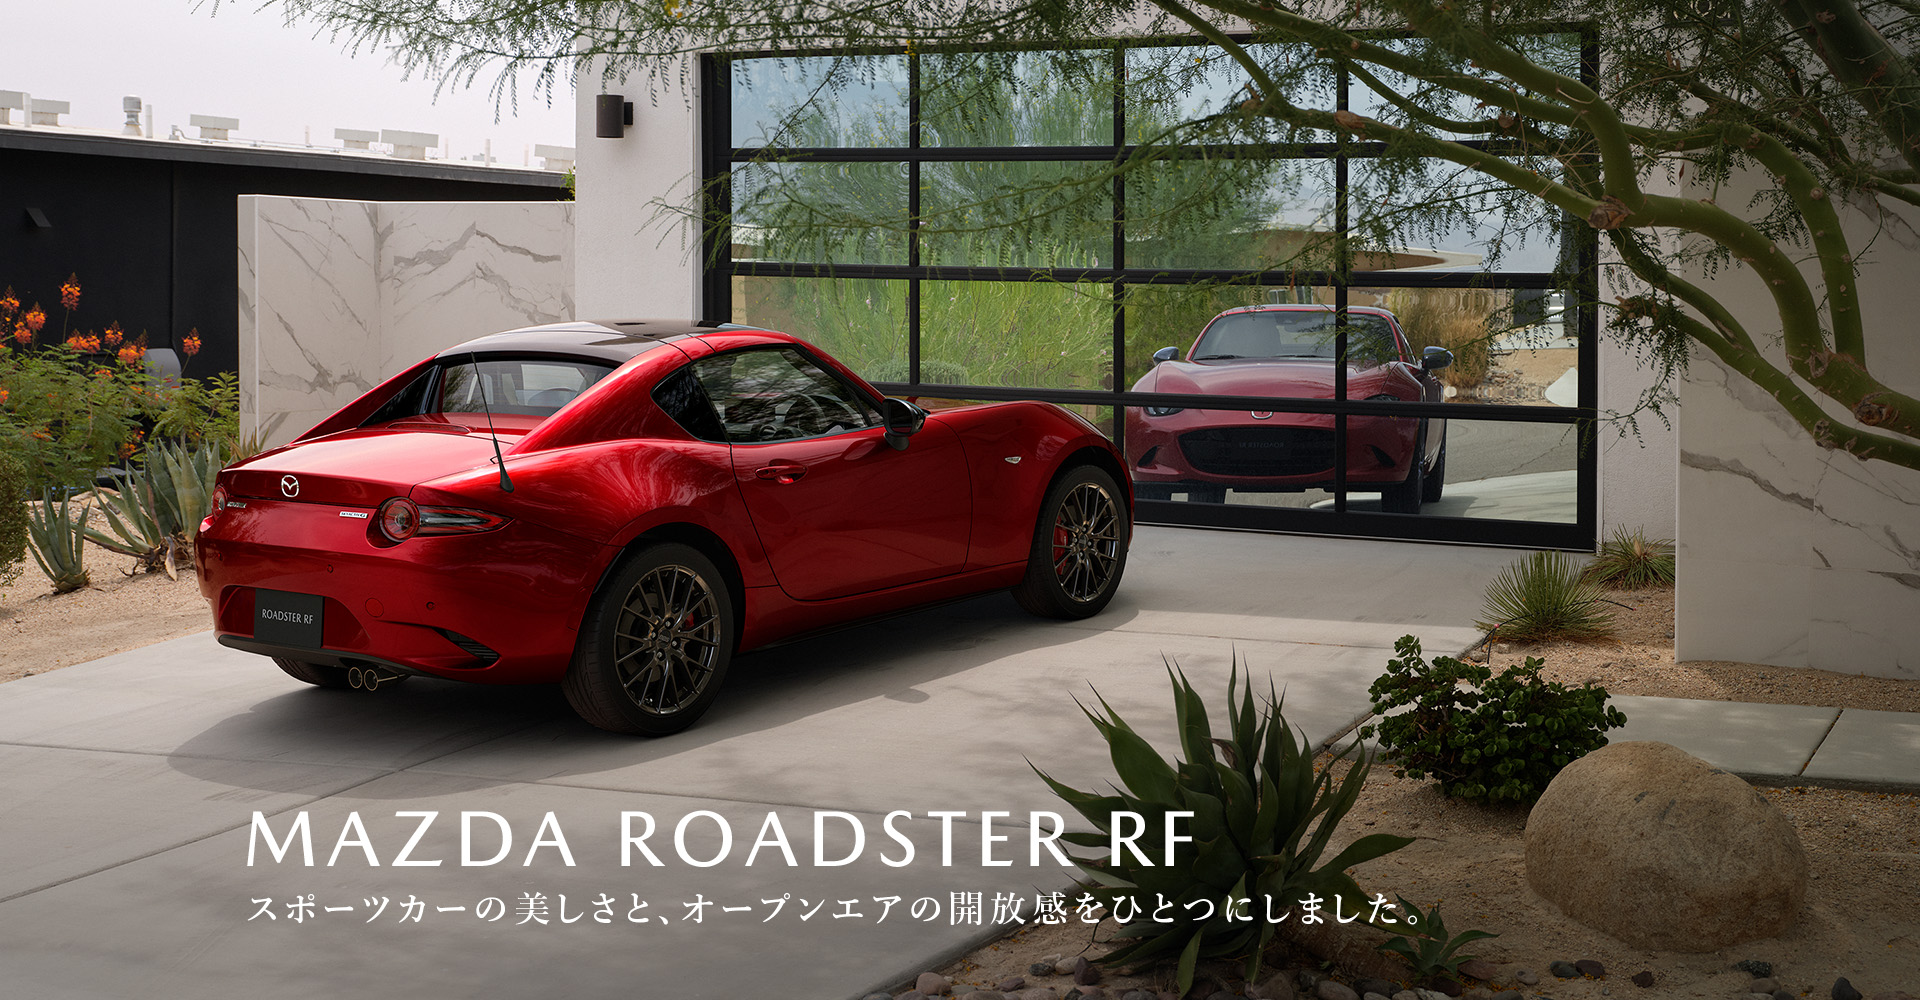 MAZDA ROADSTER RF　スポーツカーの美しさと、オープンエアの開放感をひとつにしました。